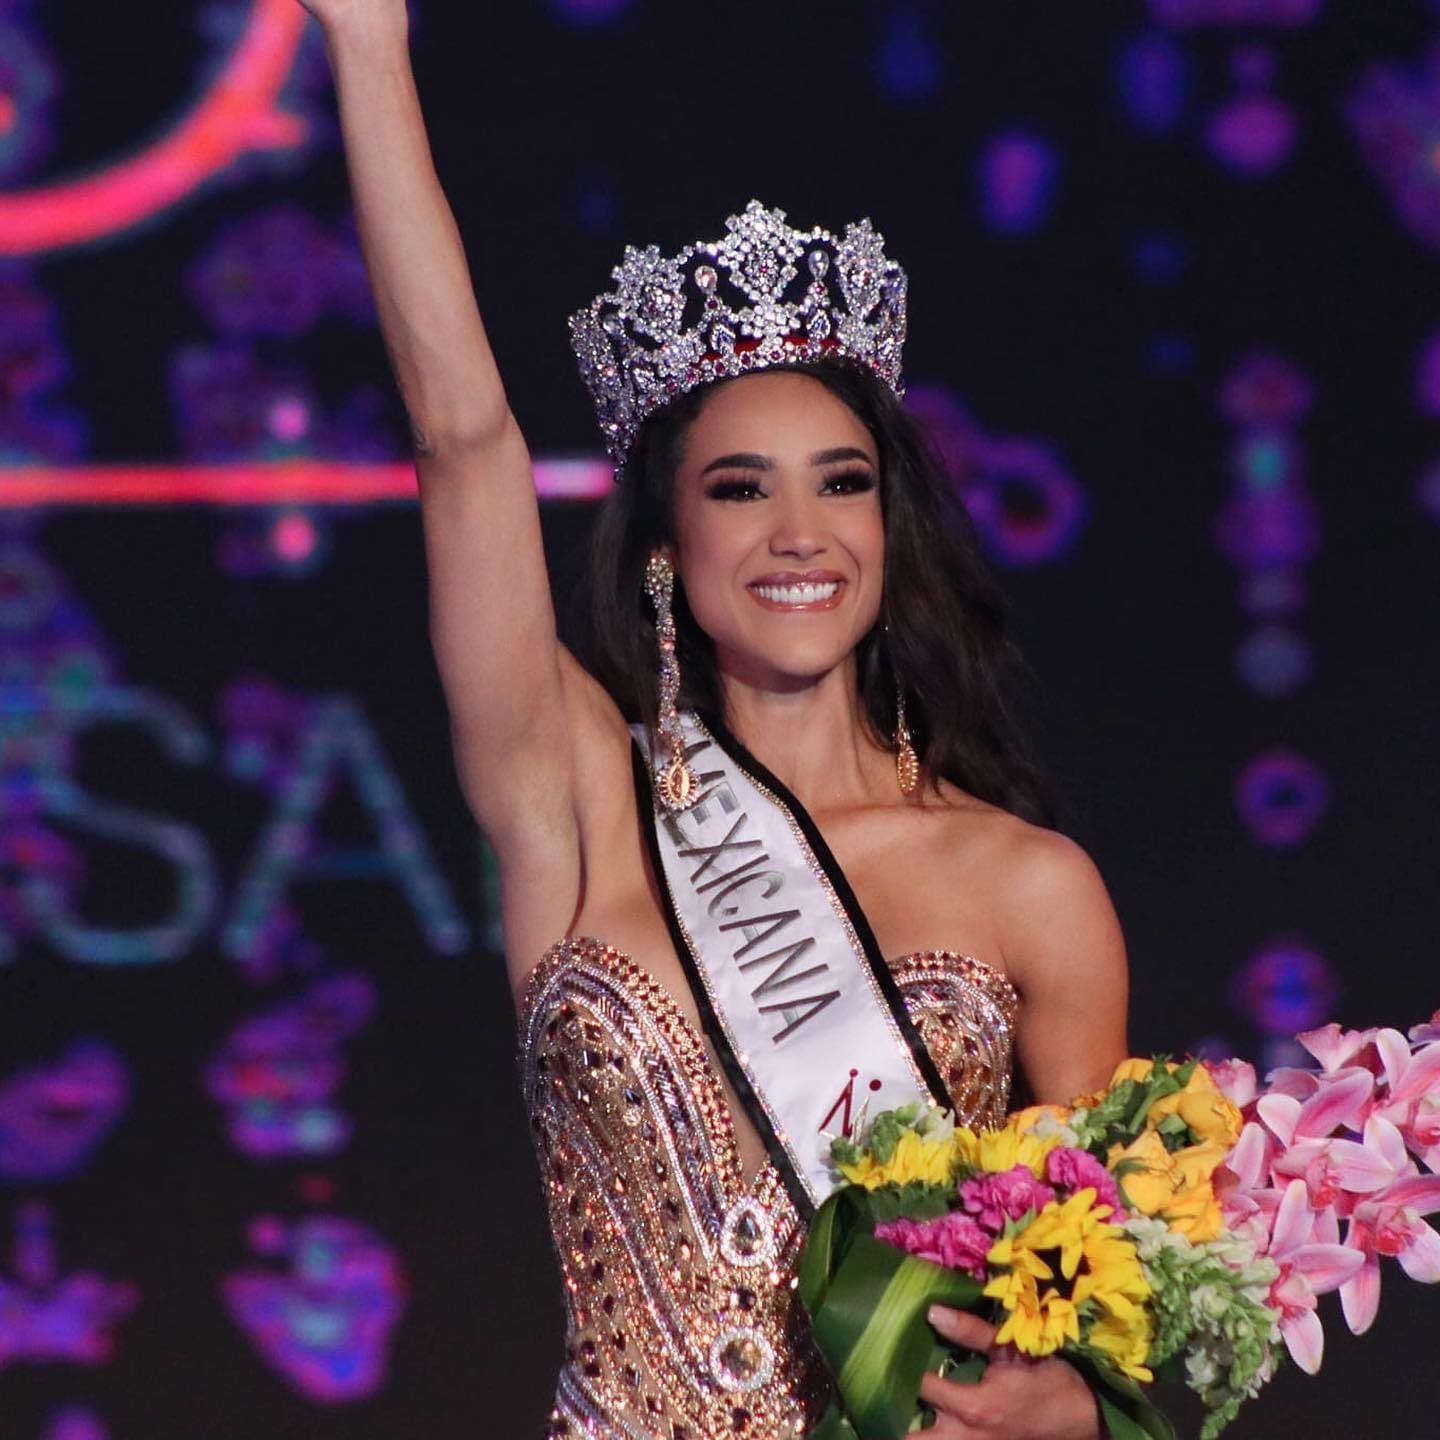 Who is Irma Miranda, Miss Mexico 2022?